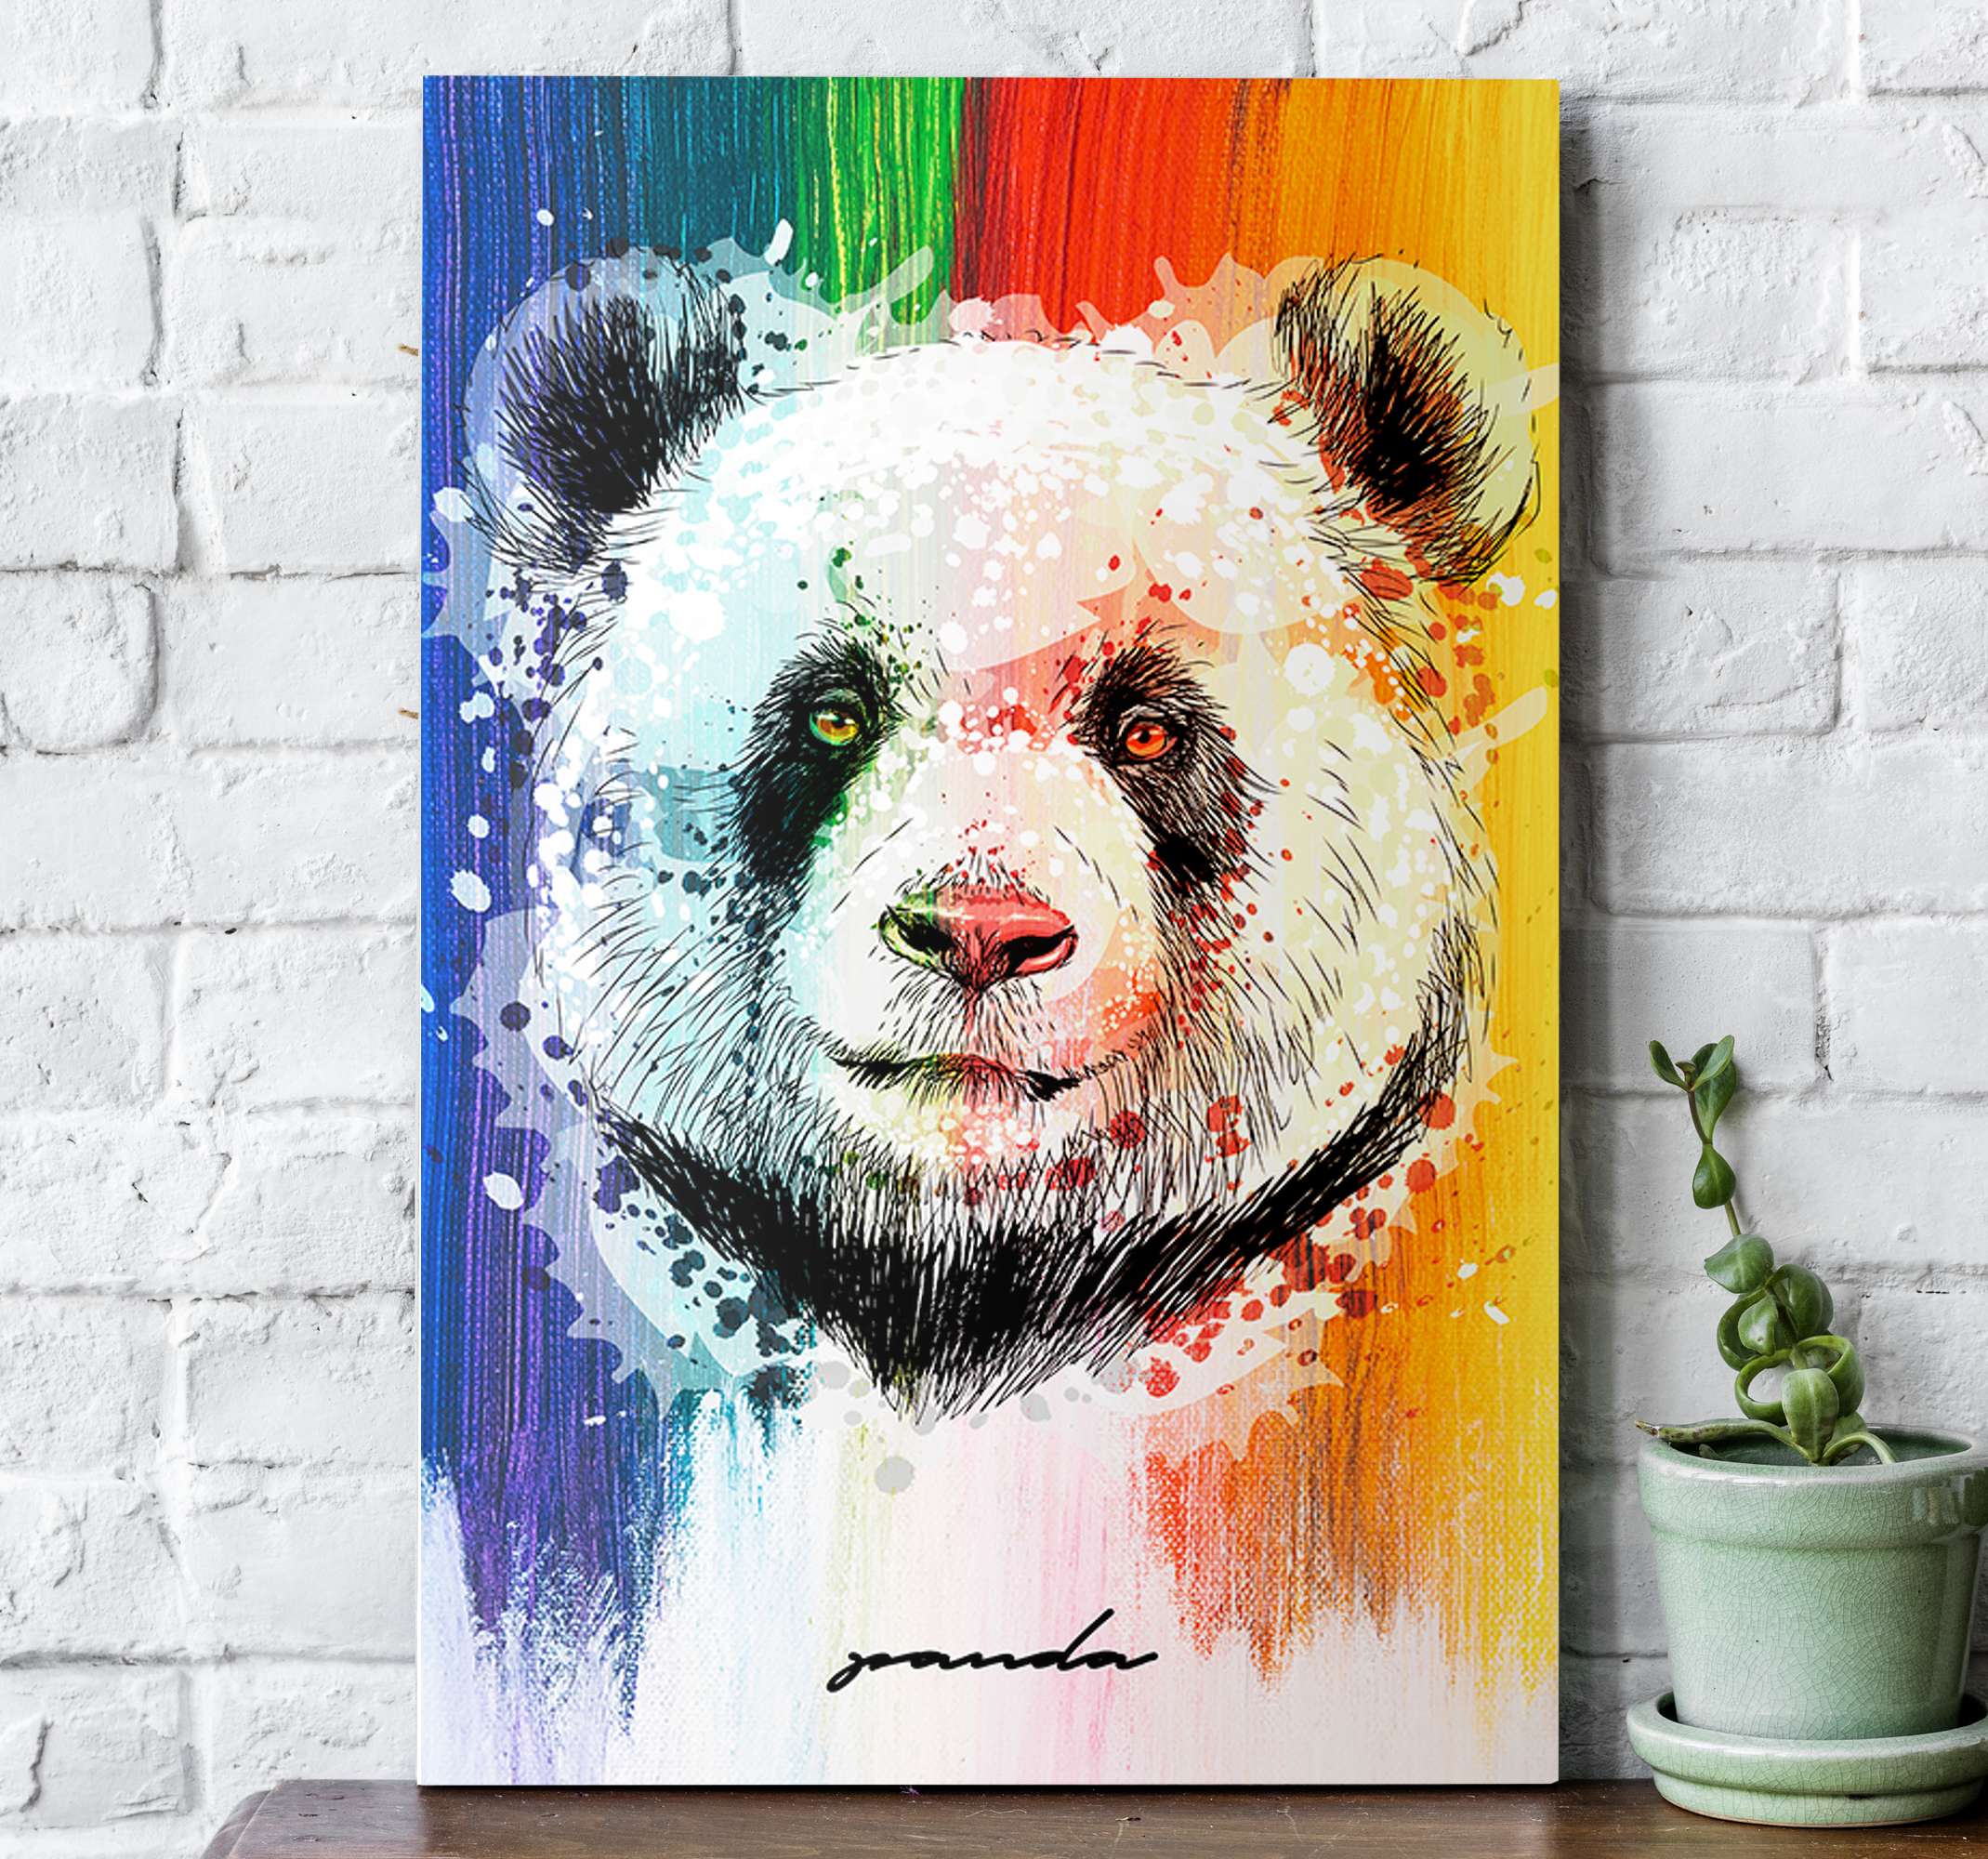 Quadro decorativo emoldurado Infantil Panda Fofo Desenho Animais para  quarto sala